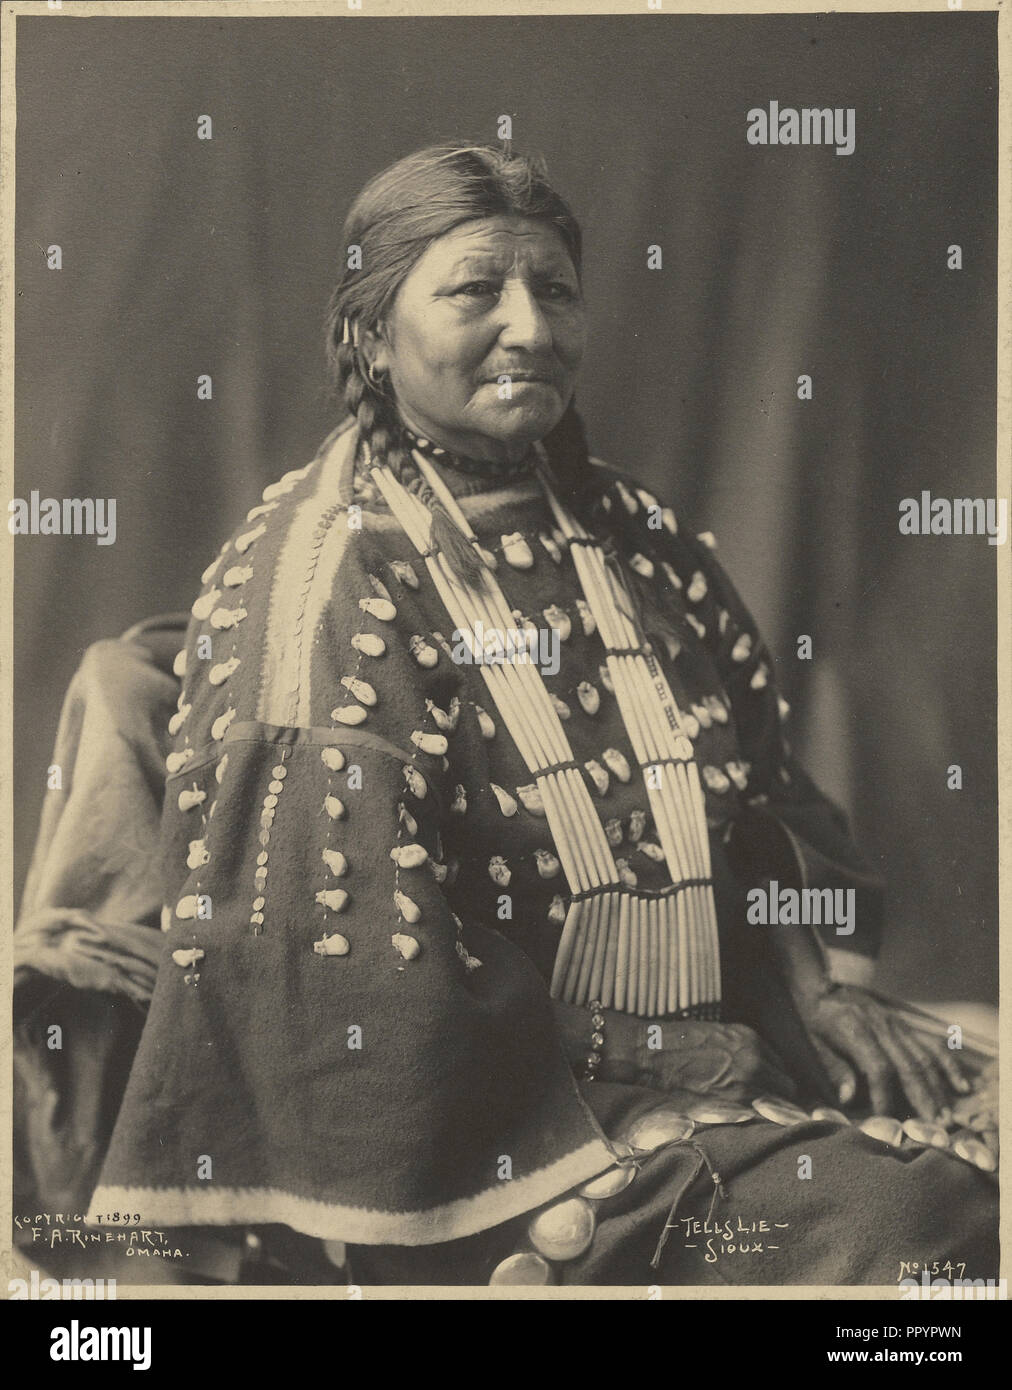 Indica mentira, Sioux; Adolph F. Muhr, American, murió el año 1913, Frank A. Rinehart, Americana, 1861, 1928, 1899; Platinum print Foto de stock